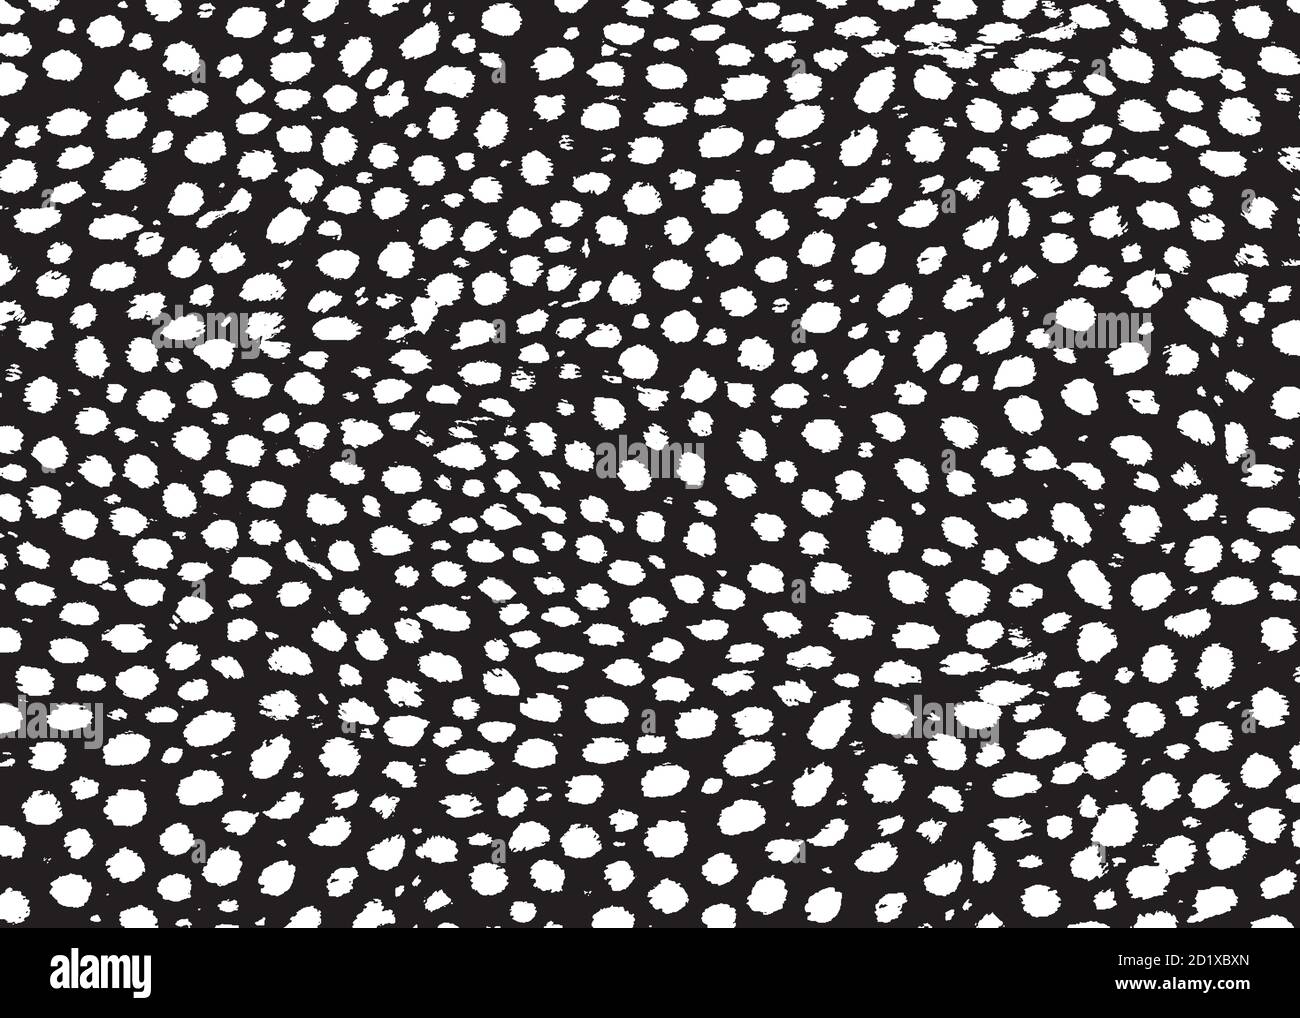 Black Leopard Print Images – Browse 85,343 Stock Photos, Vectors